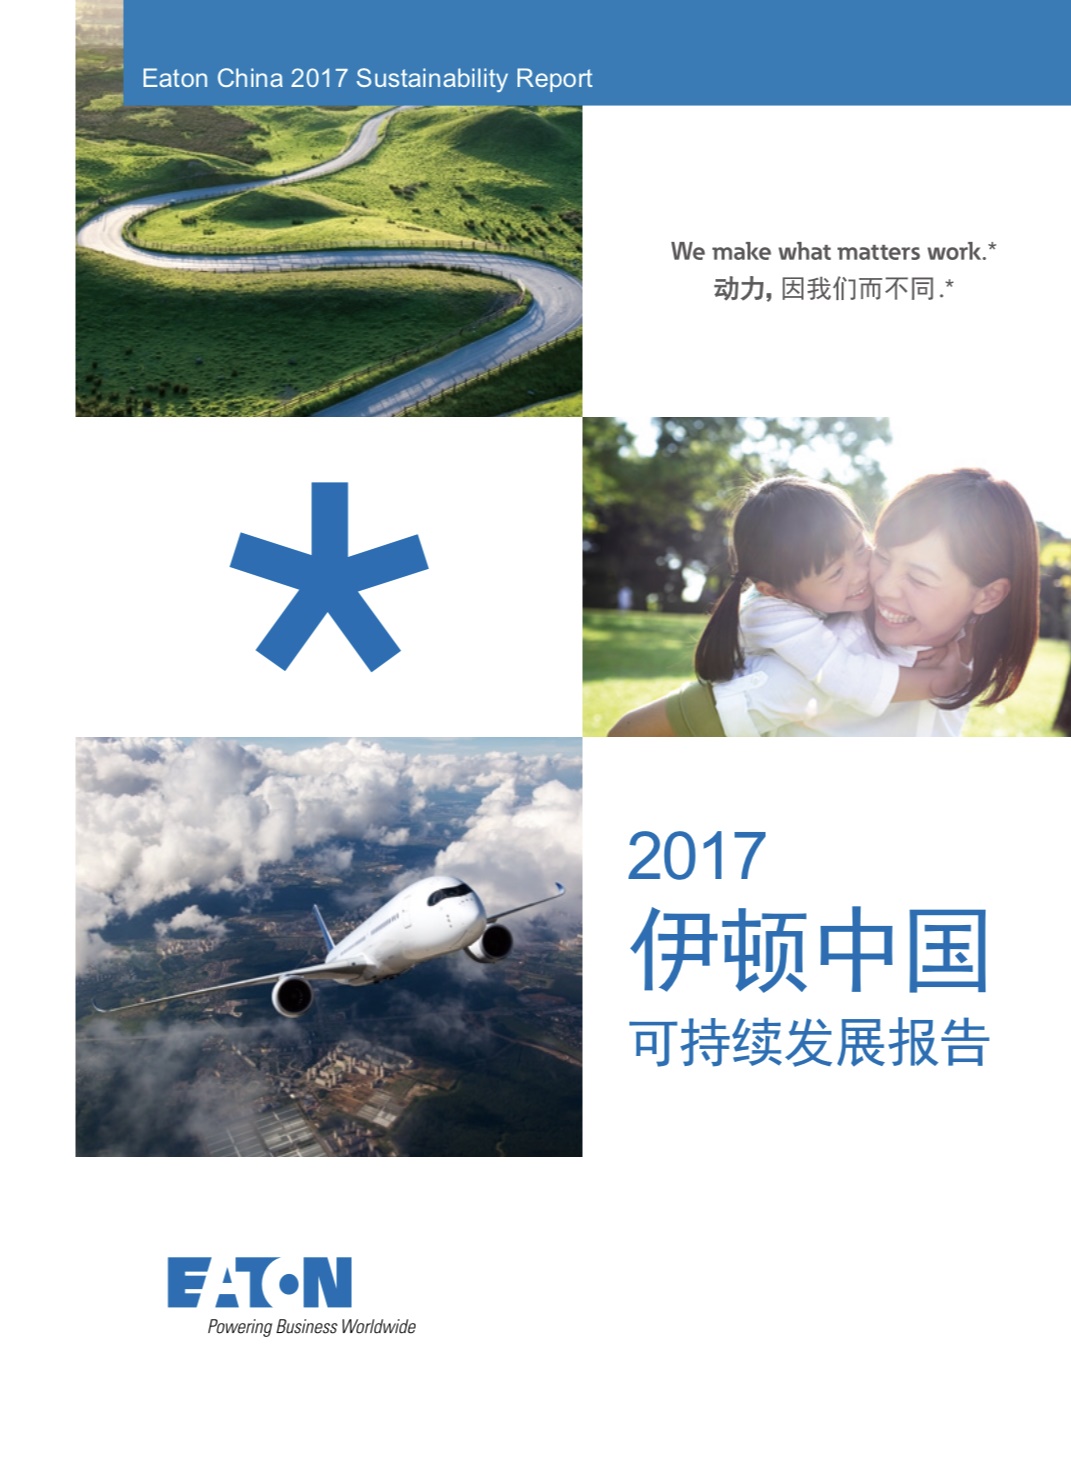 欢迎广东依顿电子科技股份有限公司加入广东省汽车行业协会 | 广东省汽车行业协会